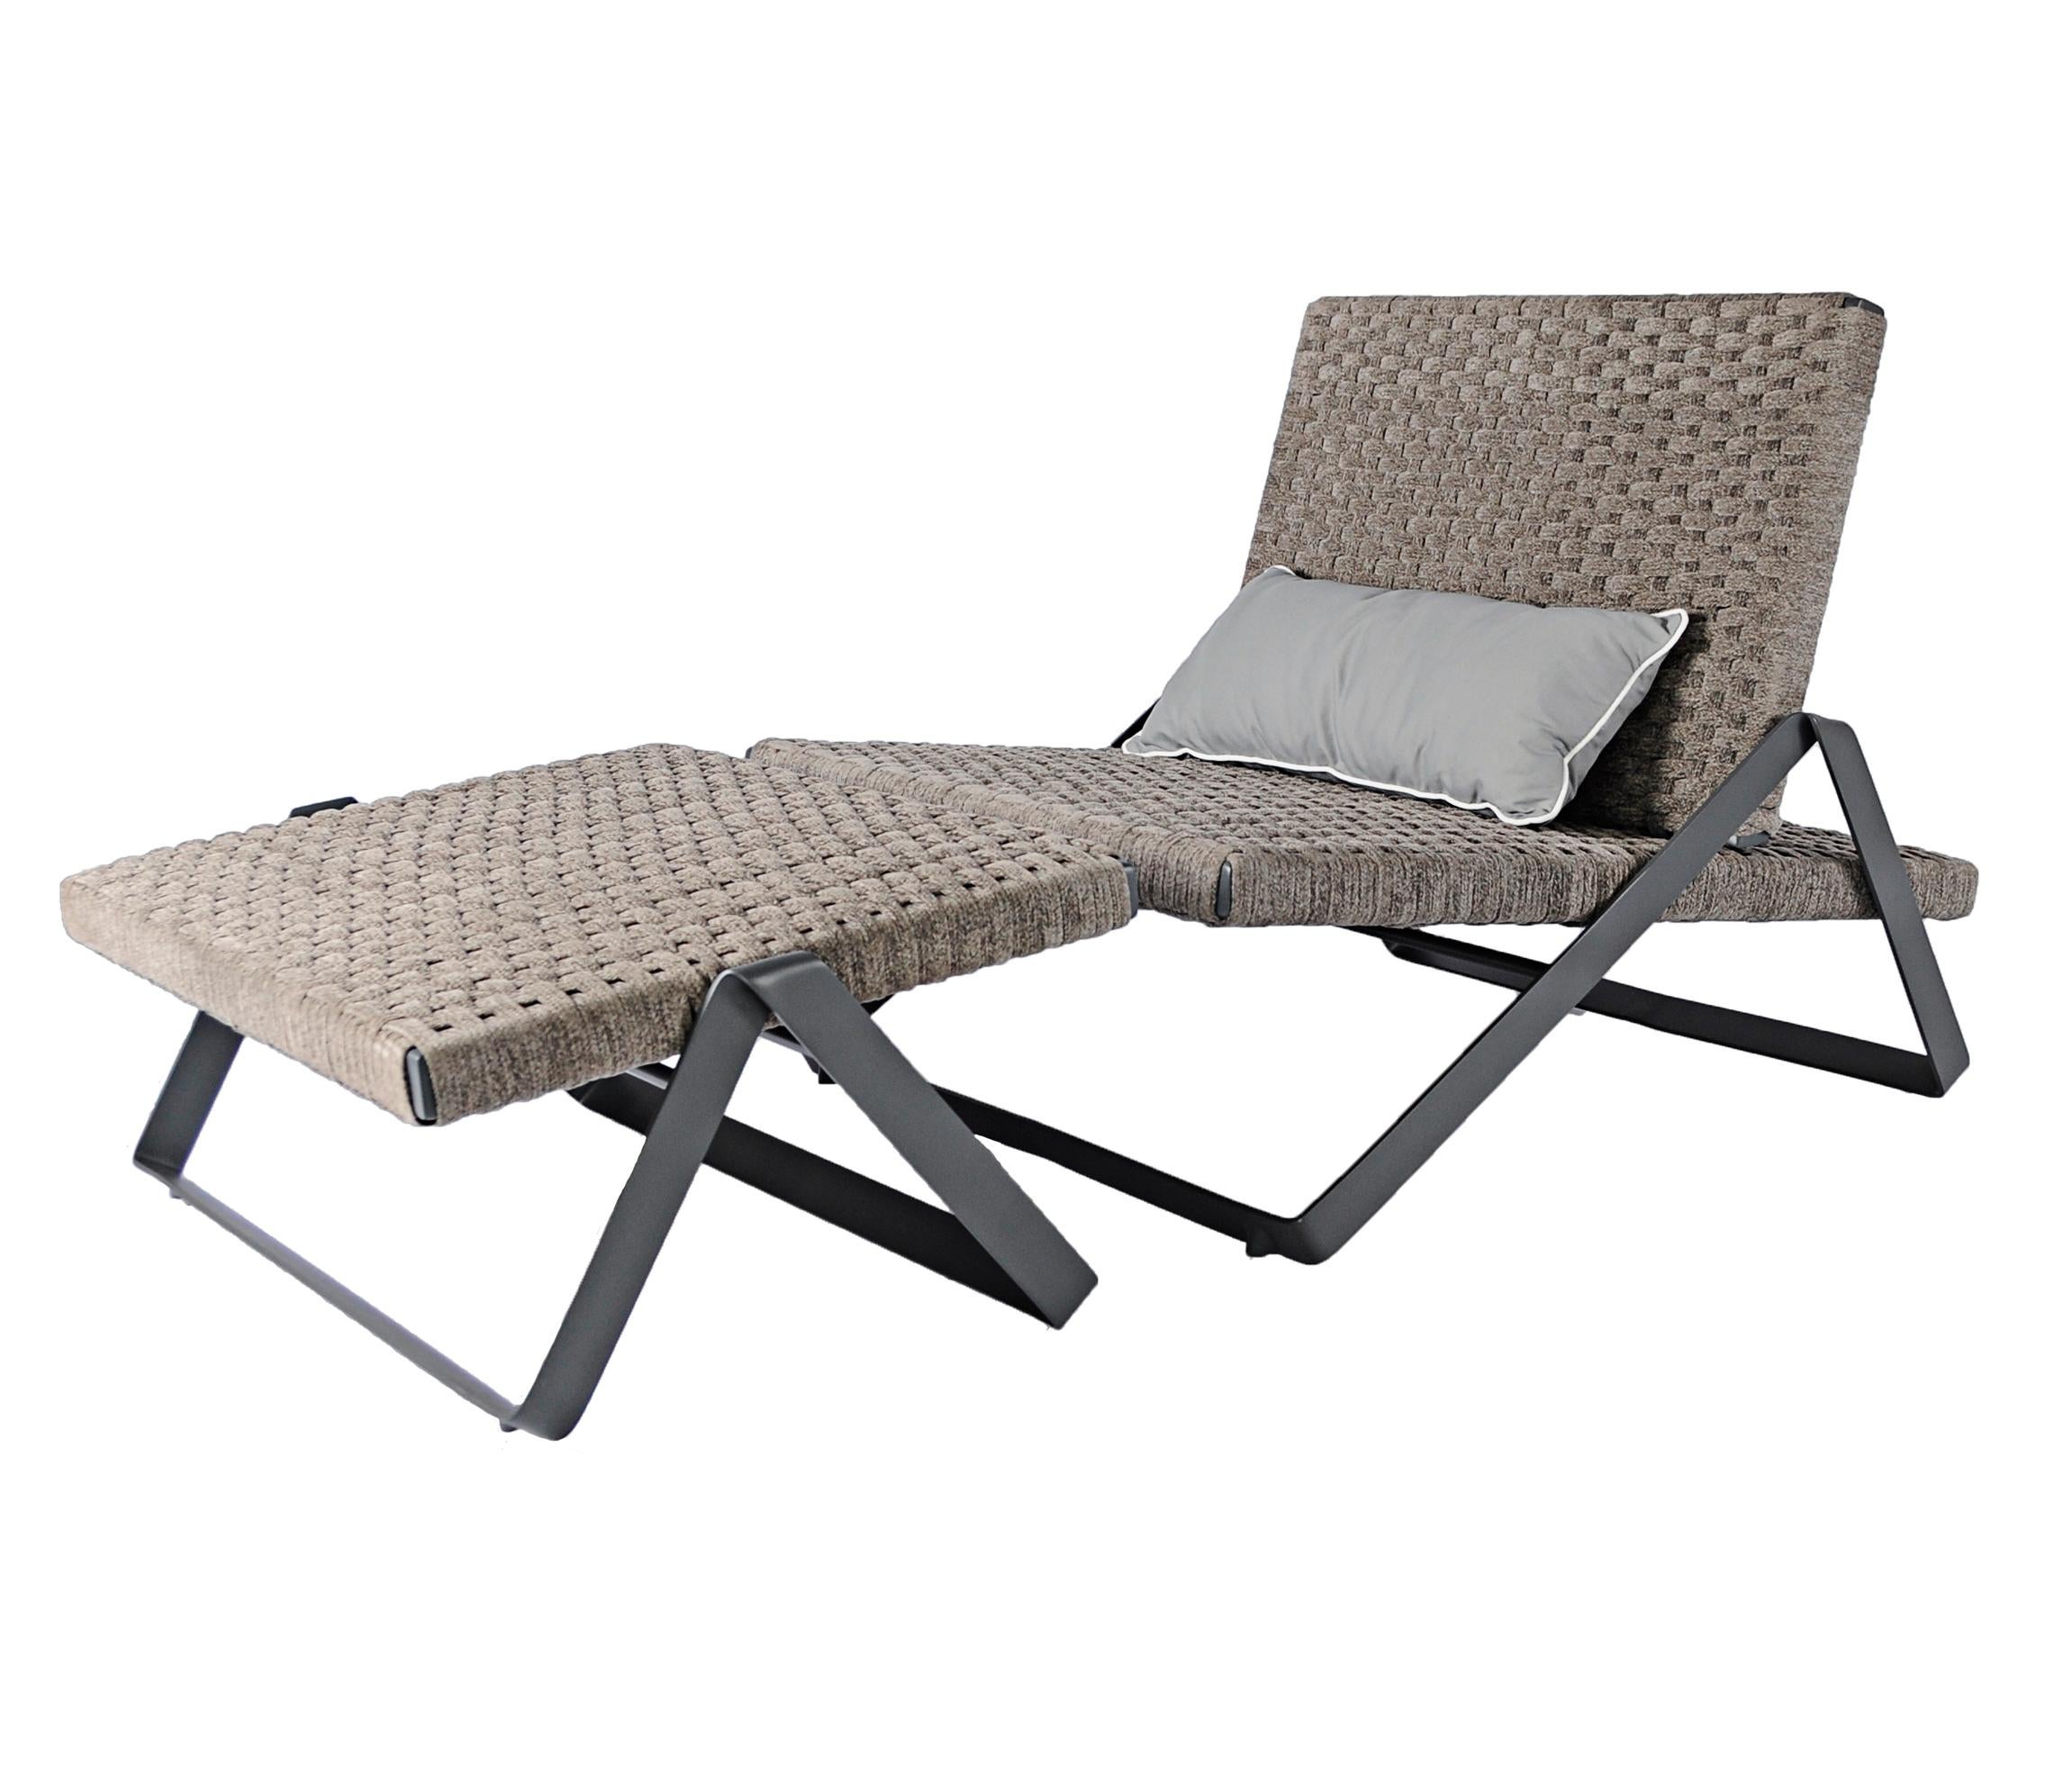 La chaise longue d'extérieur Dobra fait partie de la ligne de mobilier Dobra qui est conçue avec le concept d'une barre d'acier continue pliée pour créer des pieds et des cadres pour les différents composants.

Le pouf d'extérieur Dobra est assorti